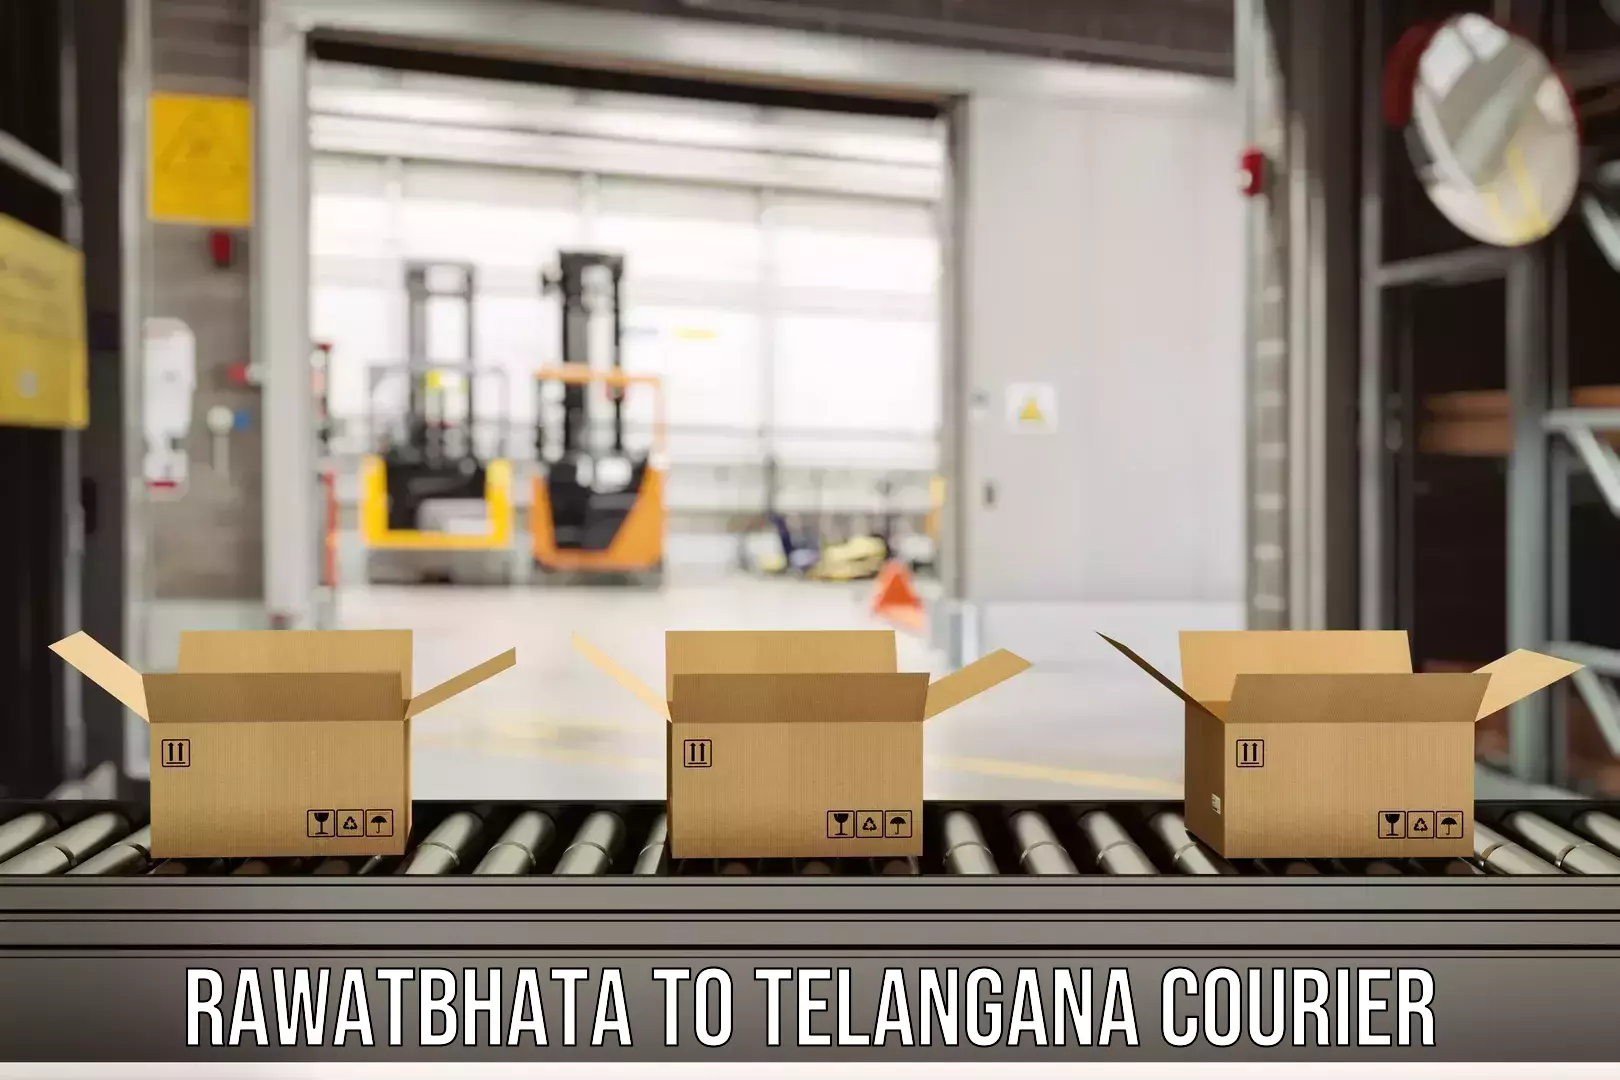 Advanced shipping technology Rawatbhata to Metpally